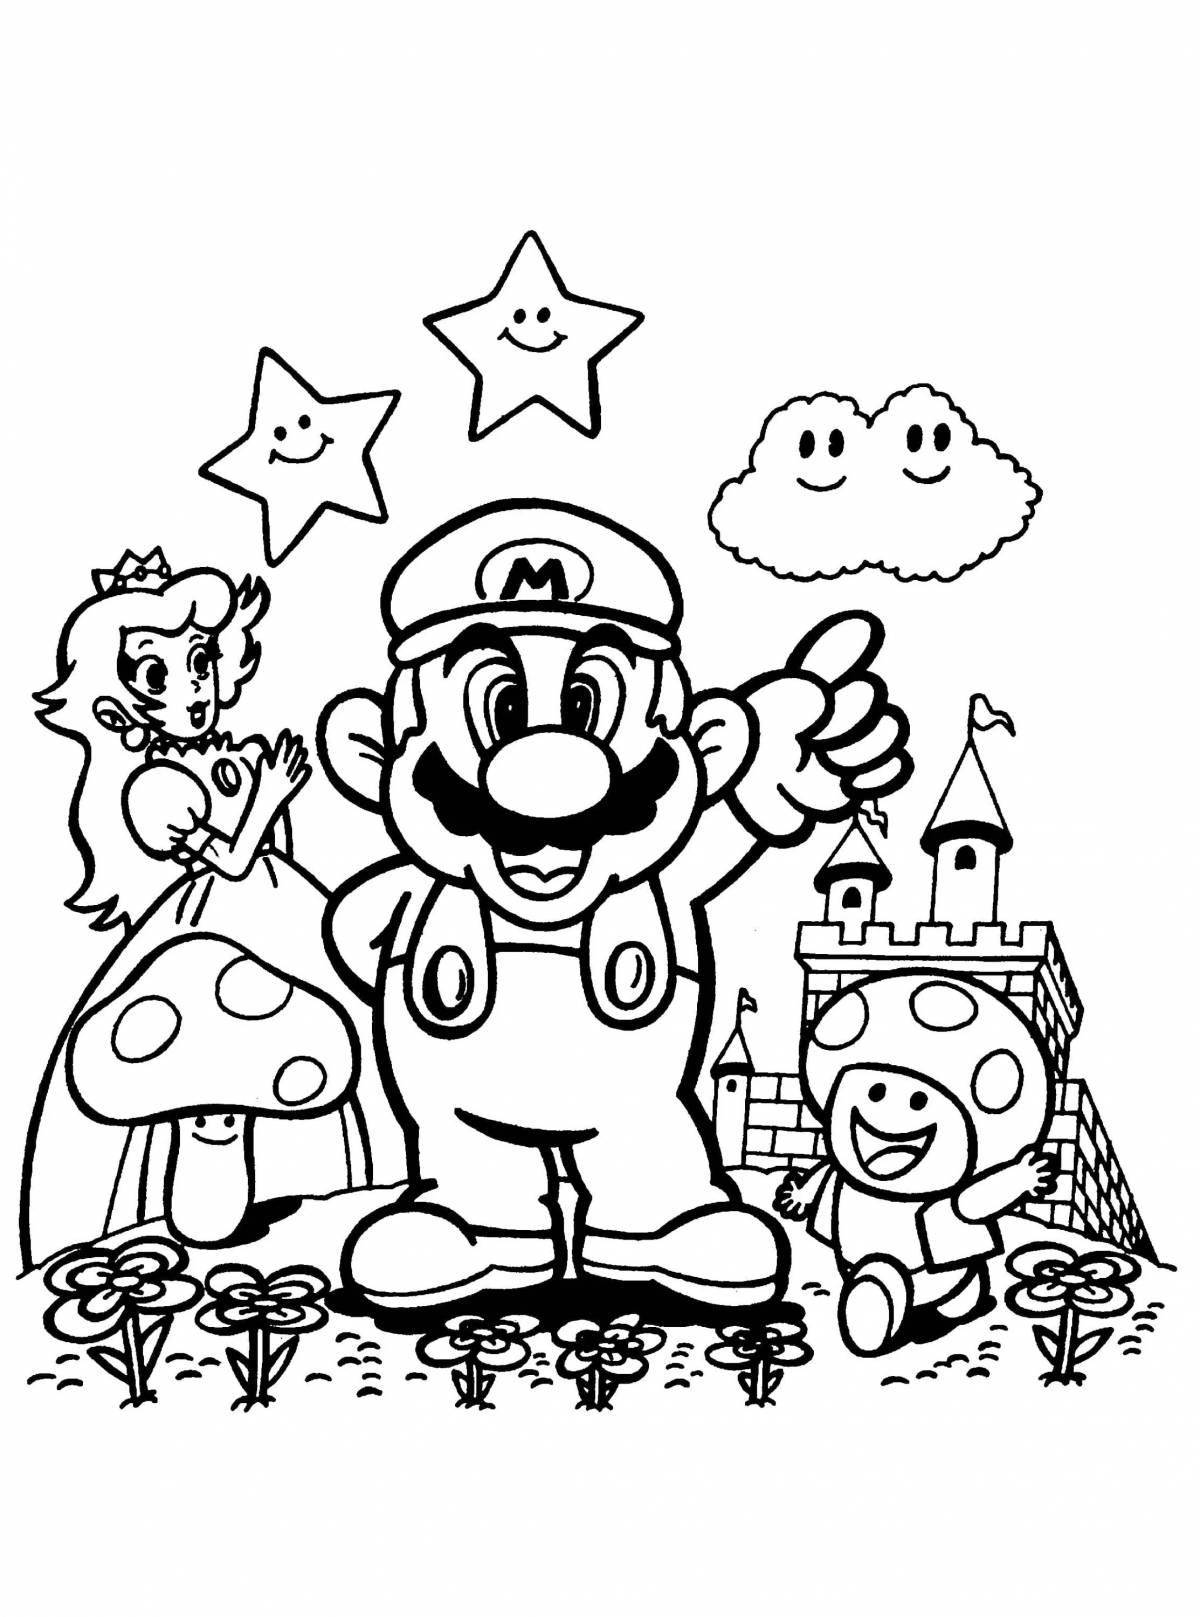 Mario odyssey amazing coloring book